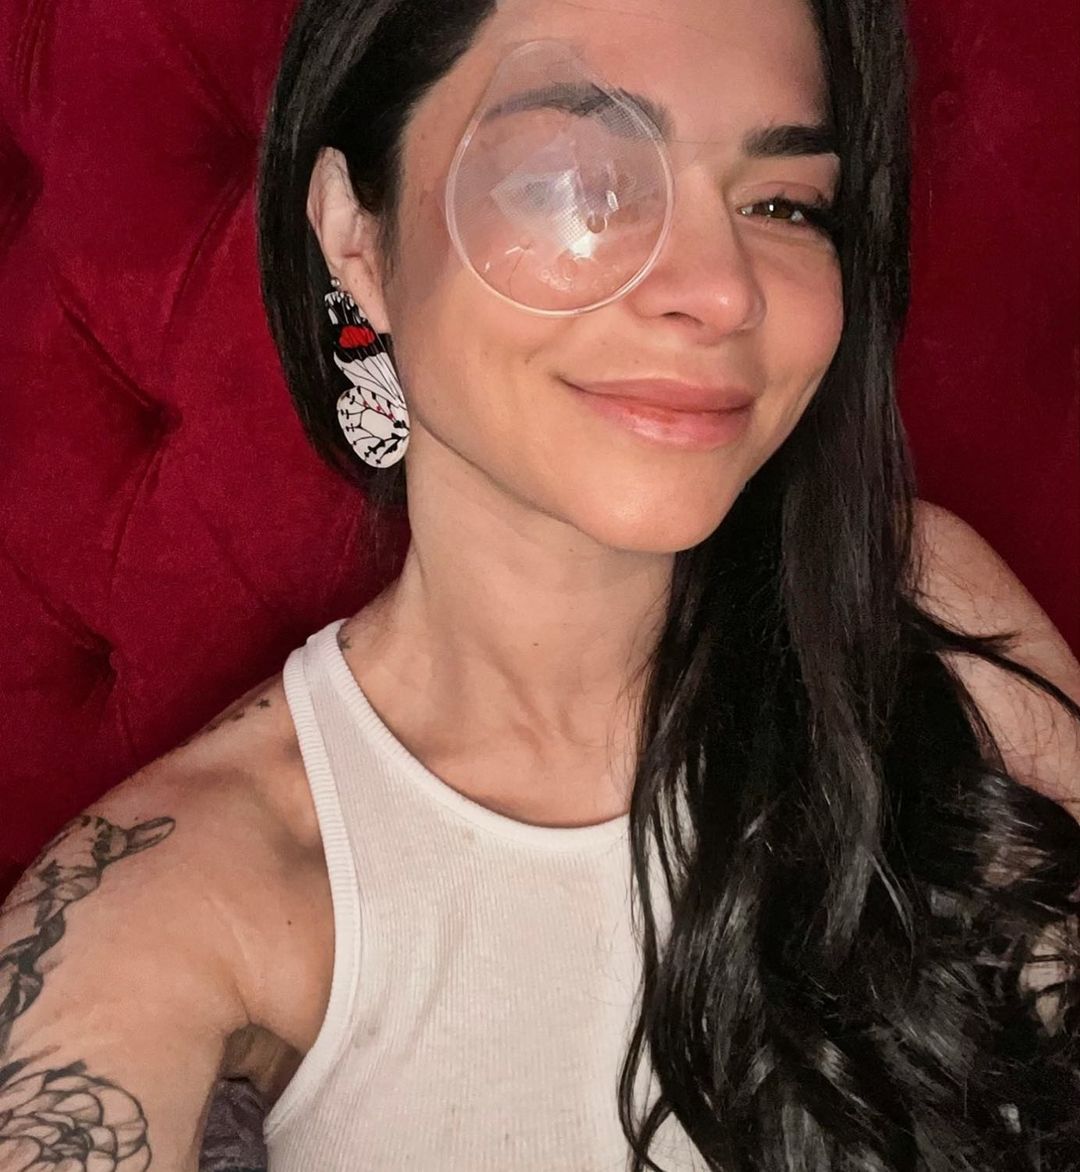 Instagram Antonella Ríos